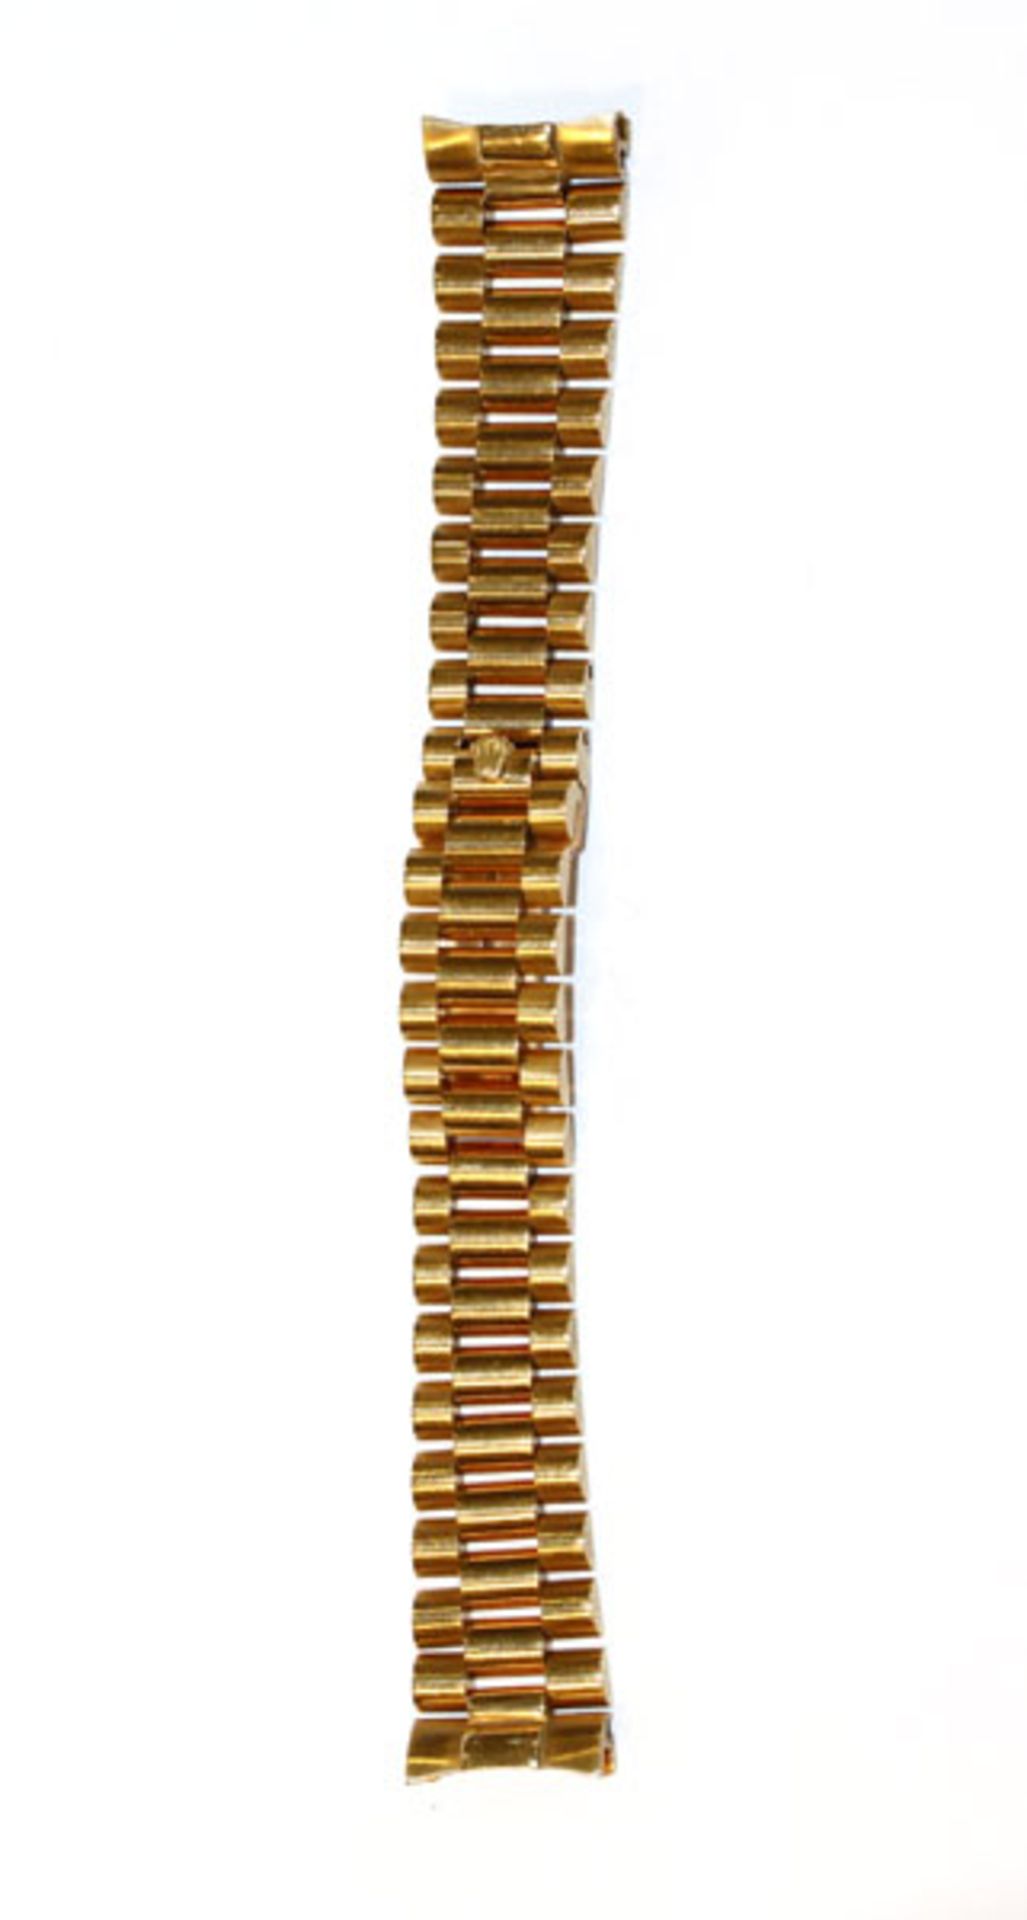 18 k Gelbgold Rolex Oyster Uhren-Armband, 69,4 gr., L 17 cm, gut erhalten